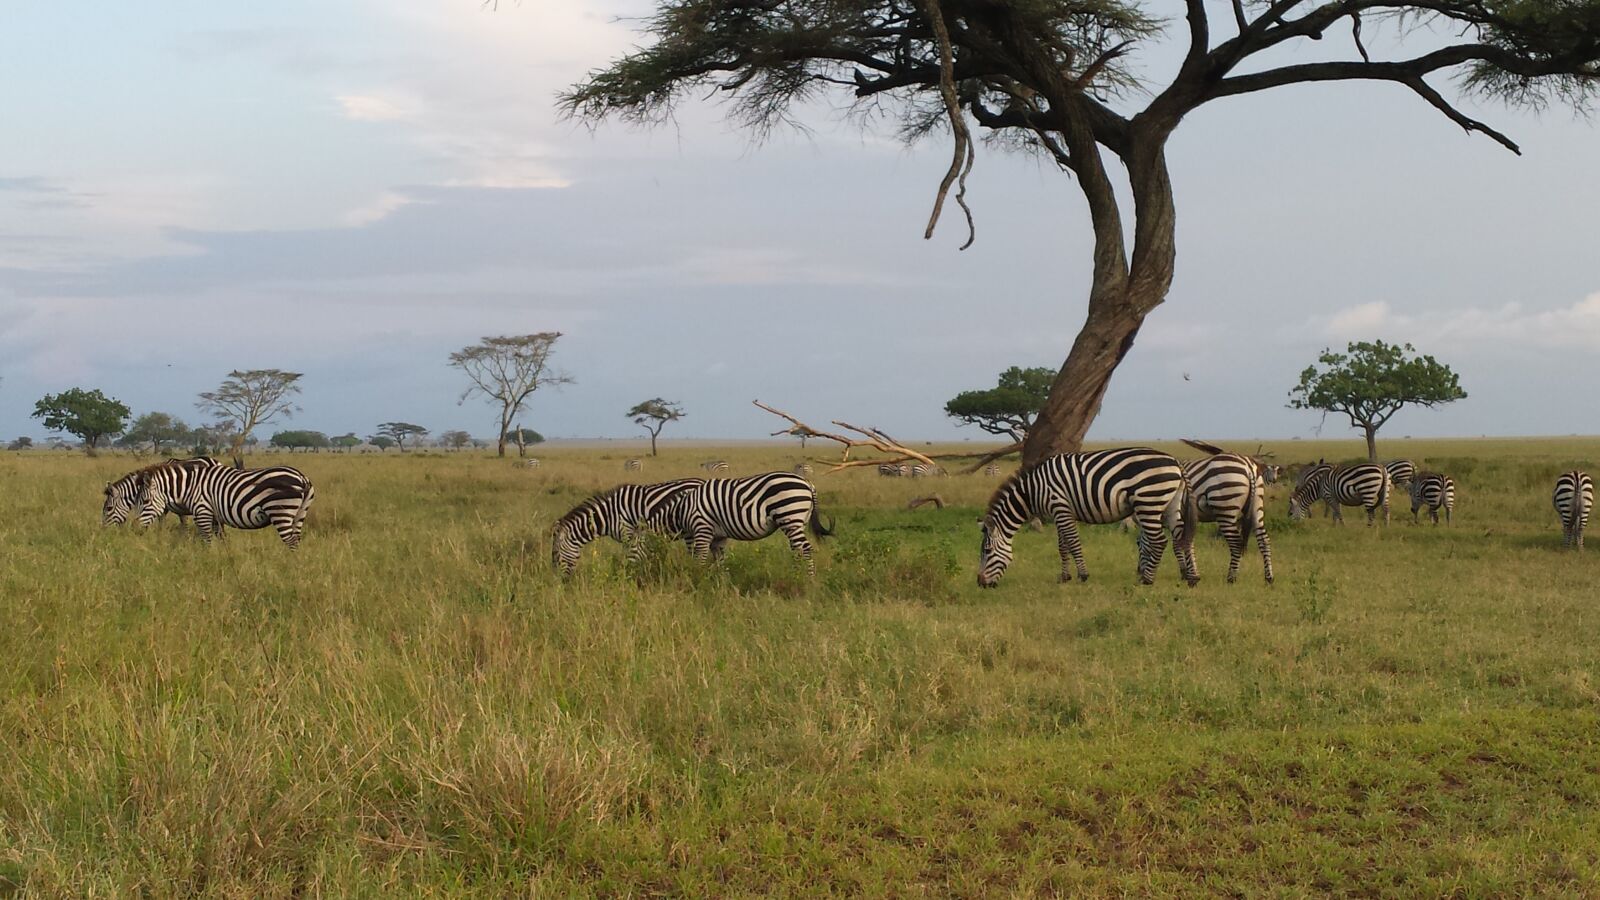 Samsung Galaxy S4 sample photo. Savannah, zebras, safari photography